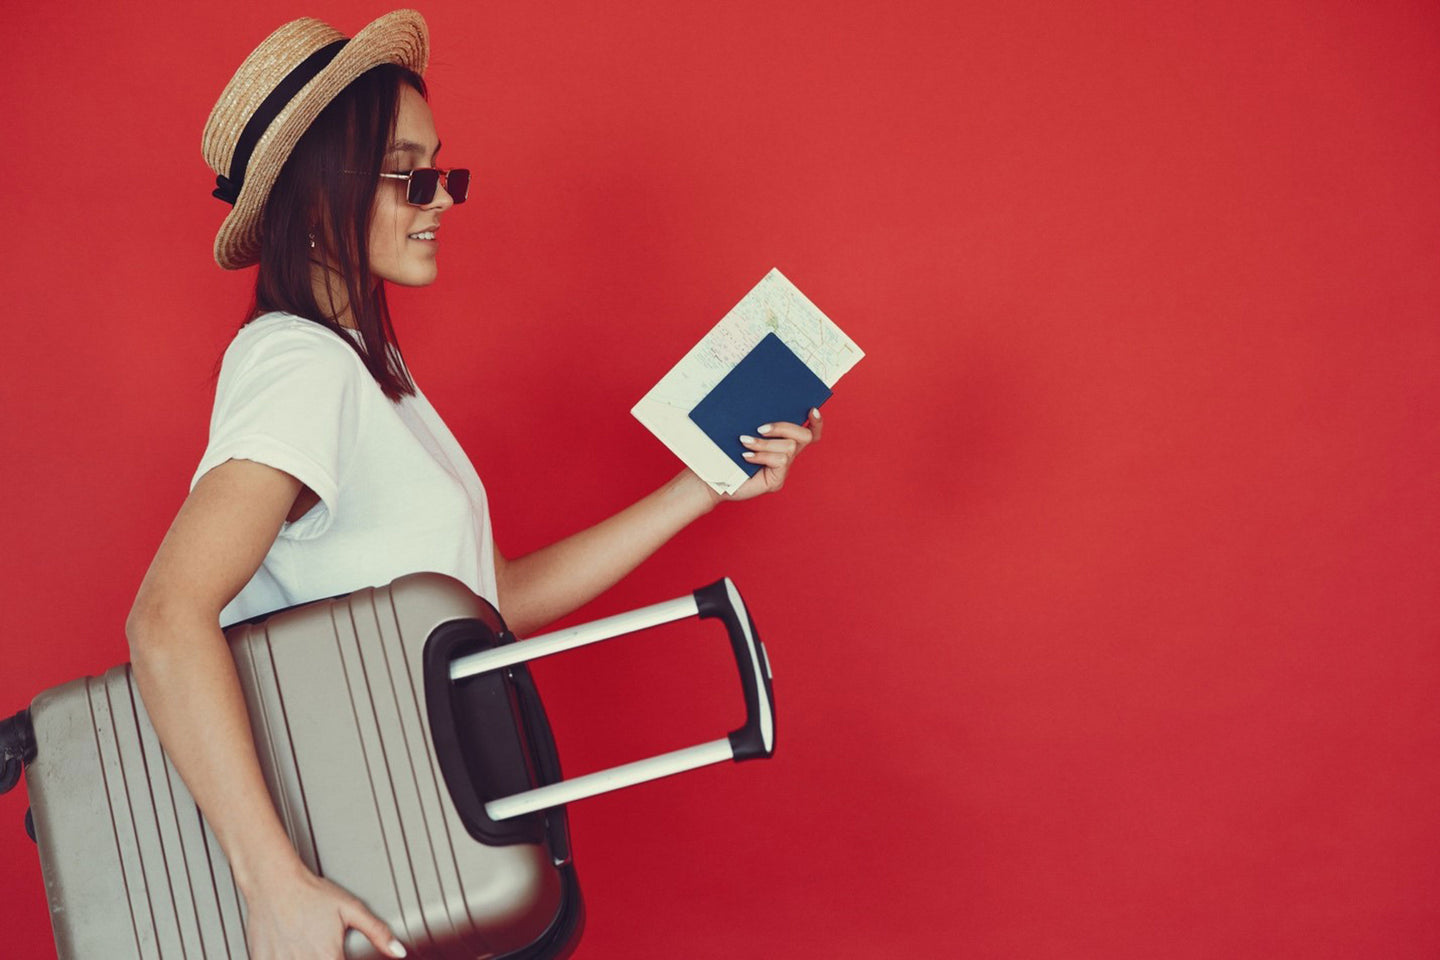 Packing Light 101: 11 Packing Tips for Female Travelers